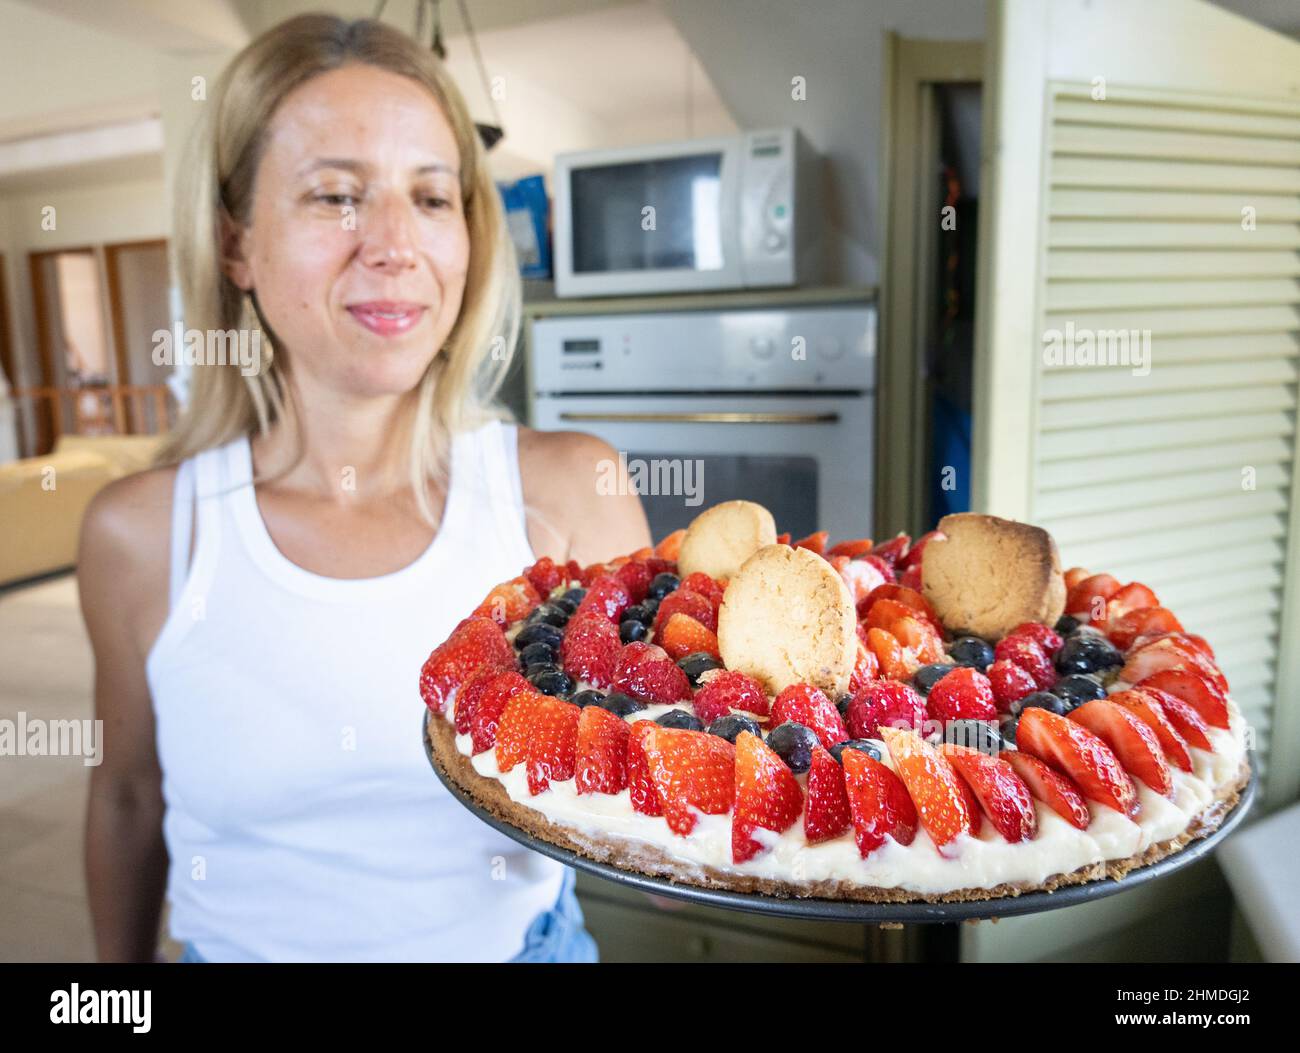 Schöne Frau mit Tarte garniert mit Schlagsahne, frischen Beeren und Keksen in der Küche Stockfoto